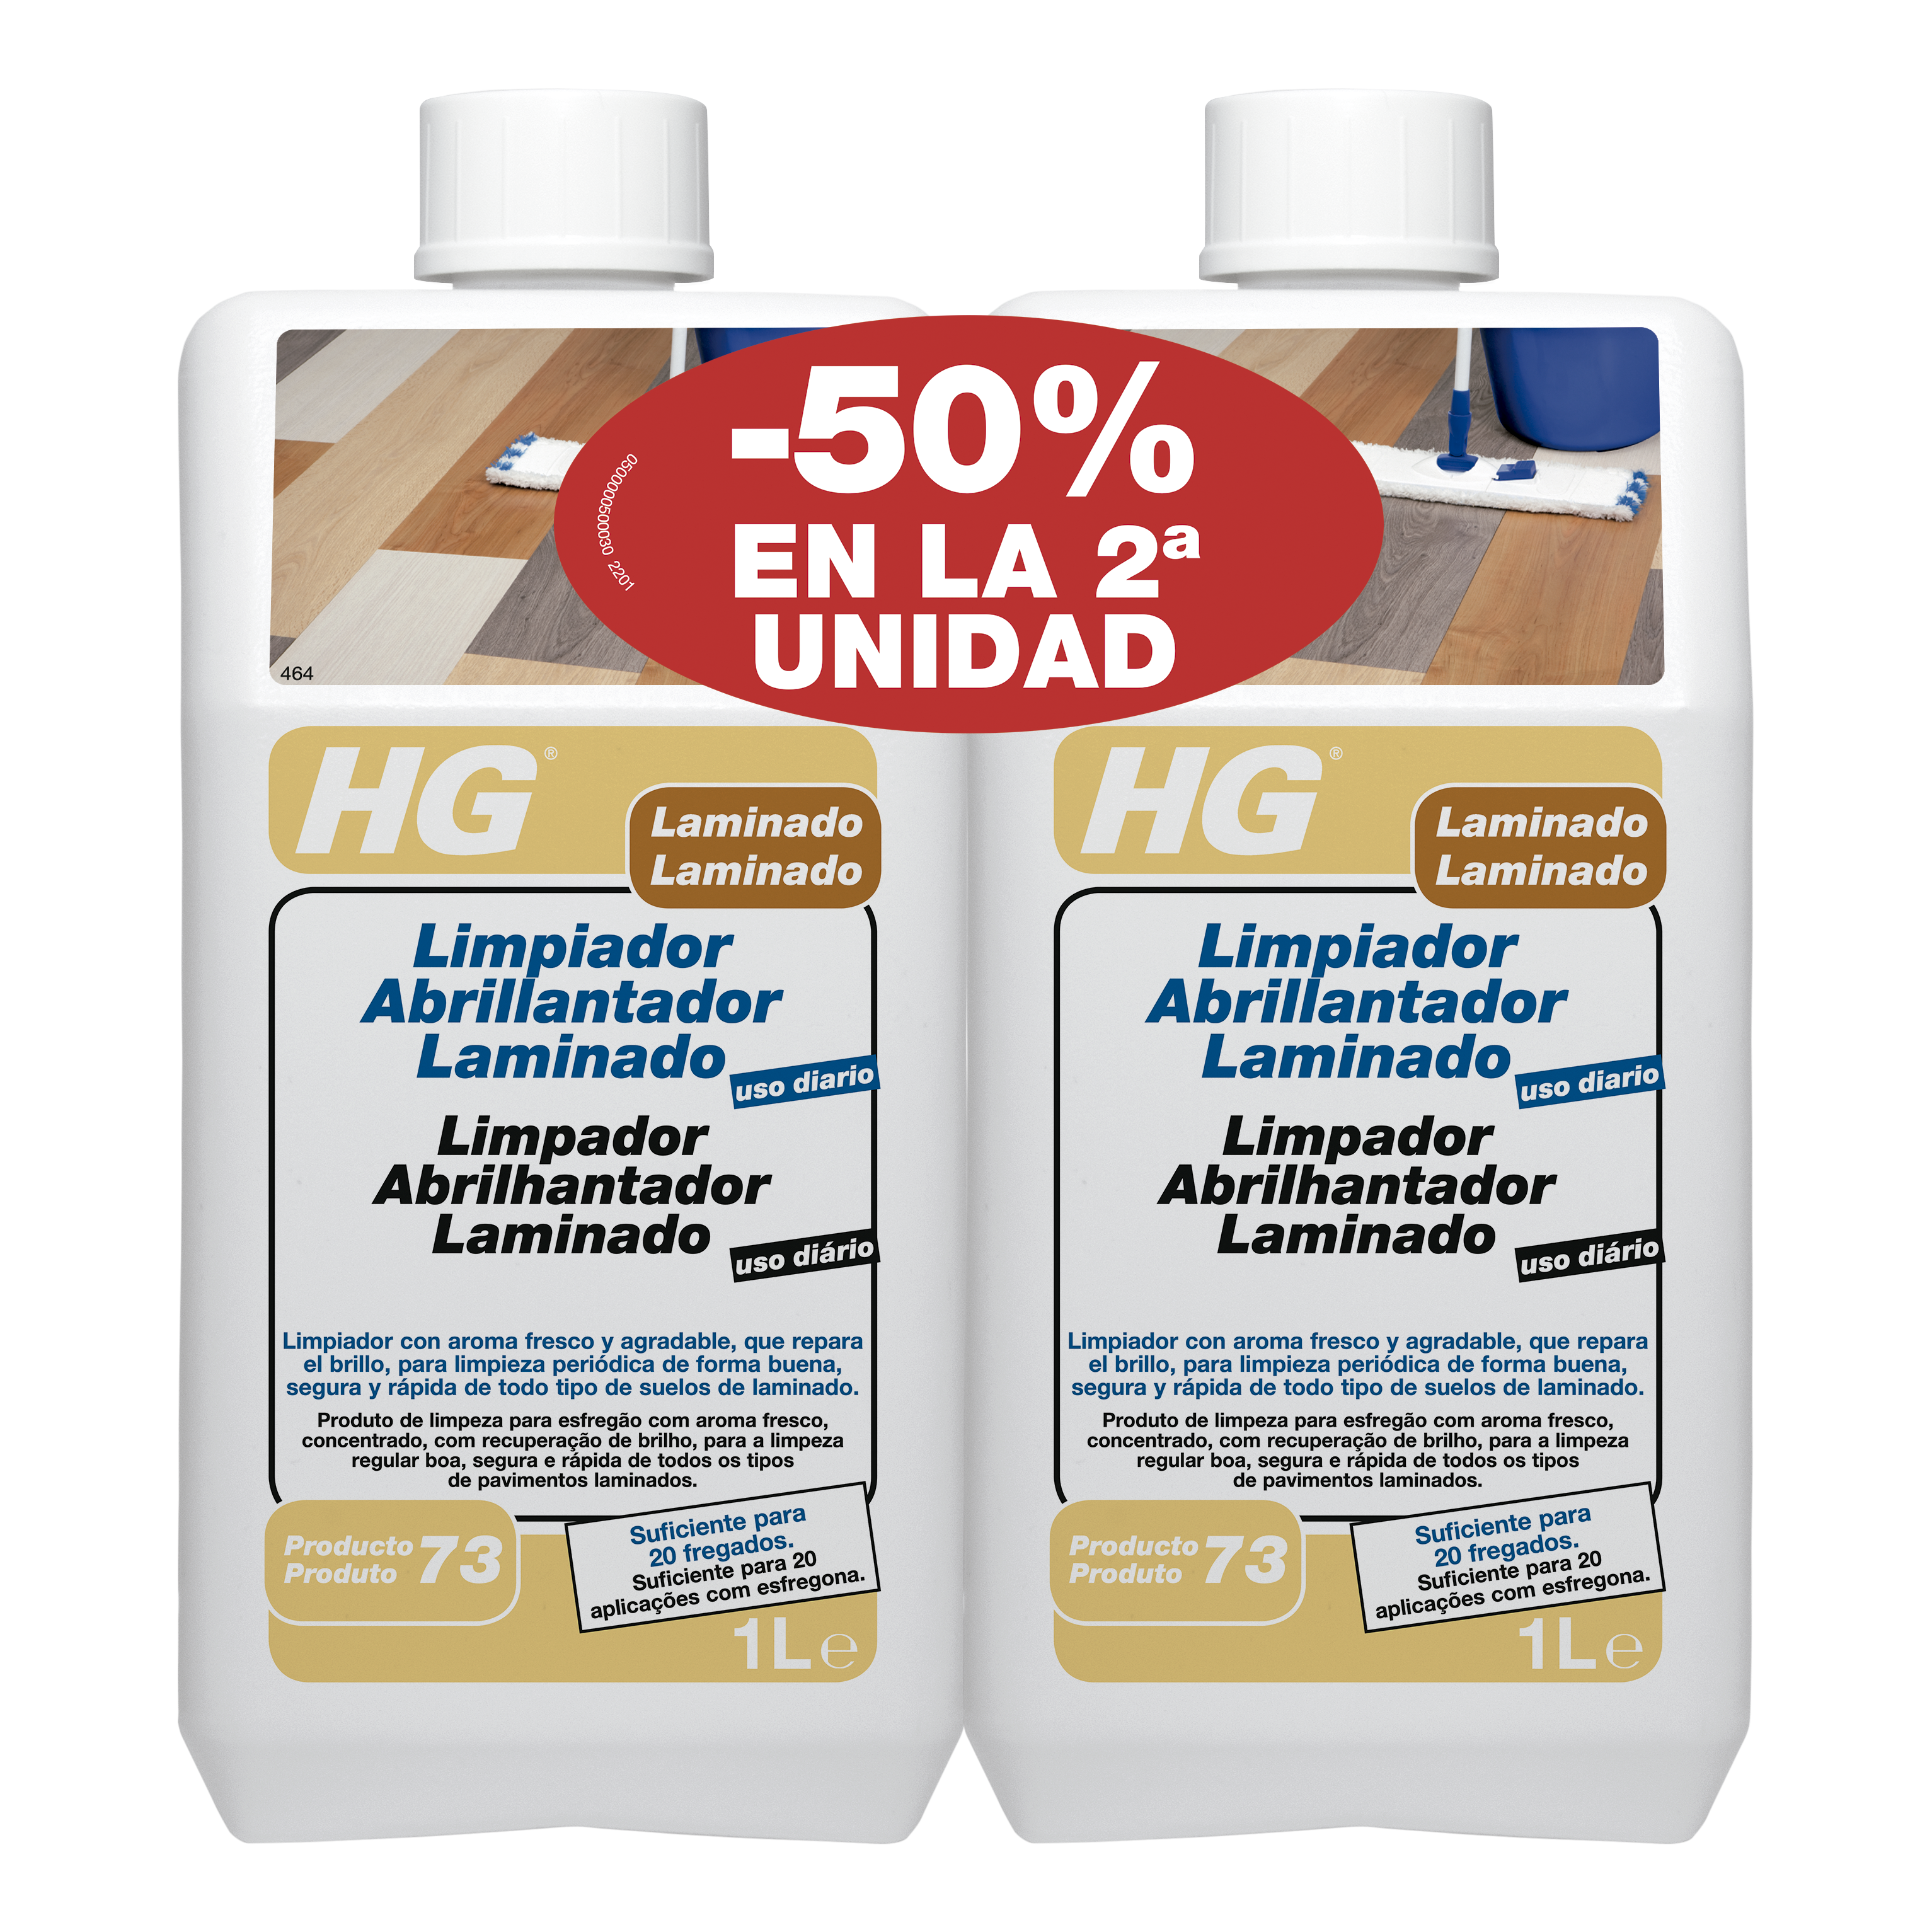 HG Limpiador abrillantador laminado (producto 73)